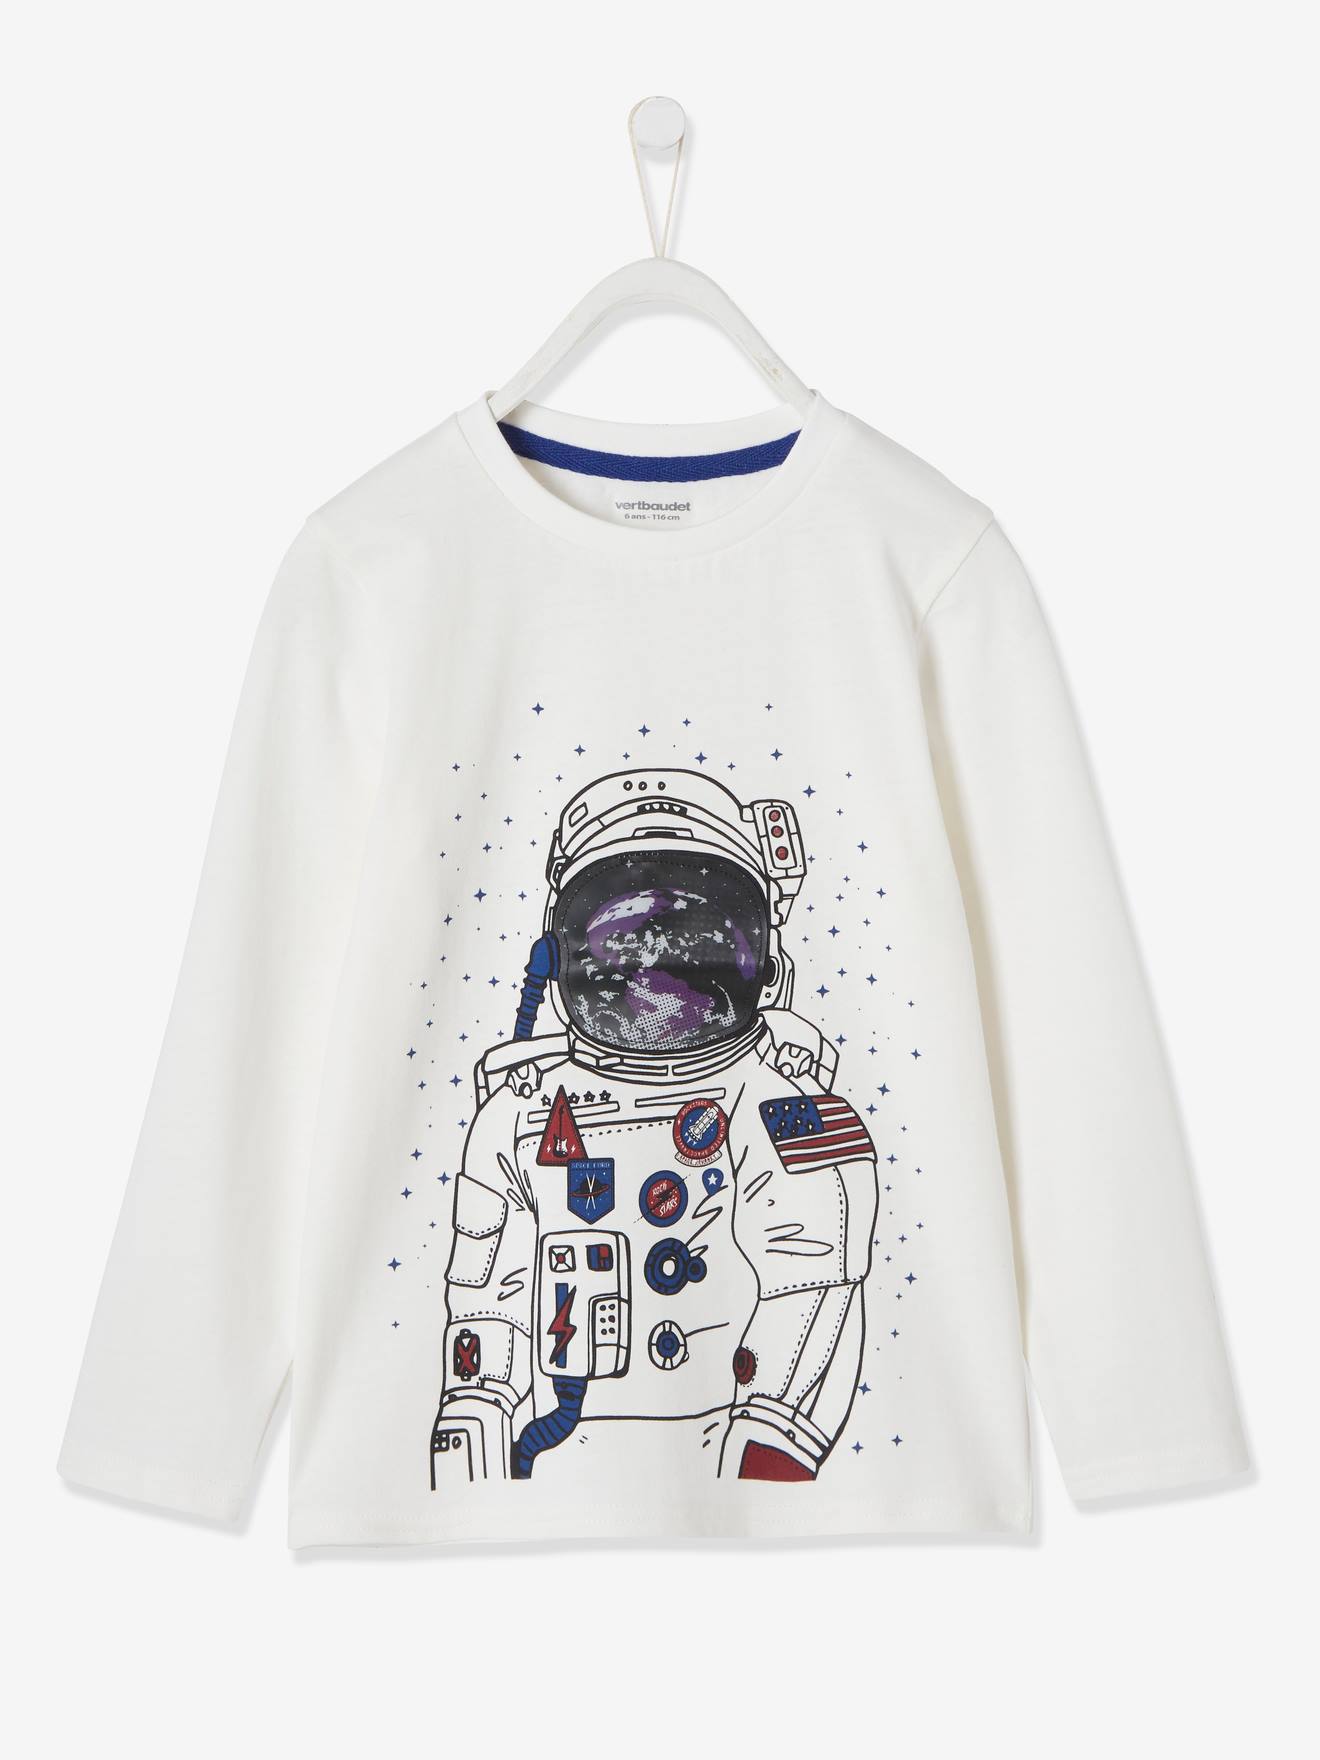 Astronaut Balançoire Lune Espace Enfants Astronautes Débardeur Amazon Garçon Vêtements Tops & T-shirts Tops Débardeurs 